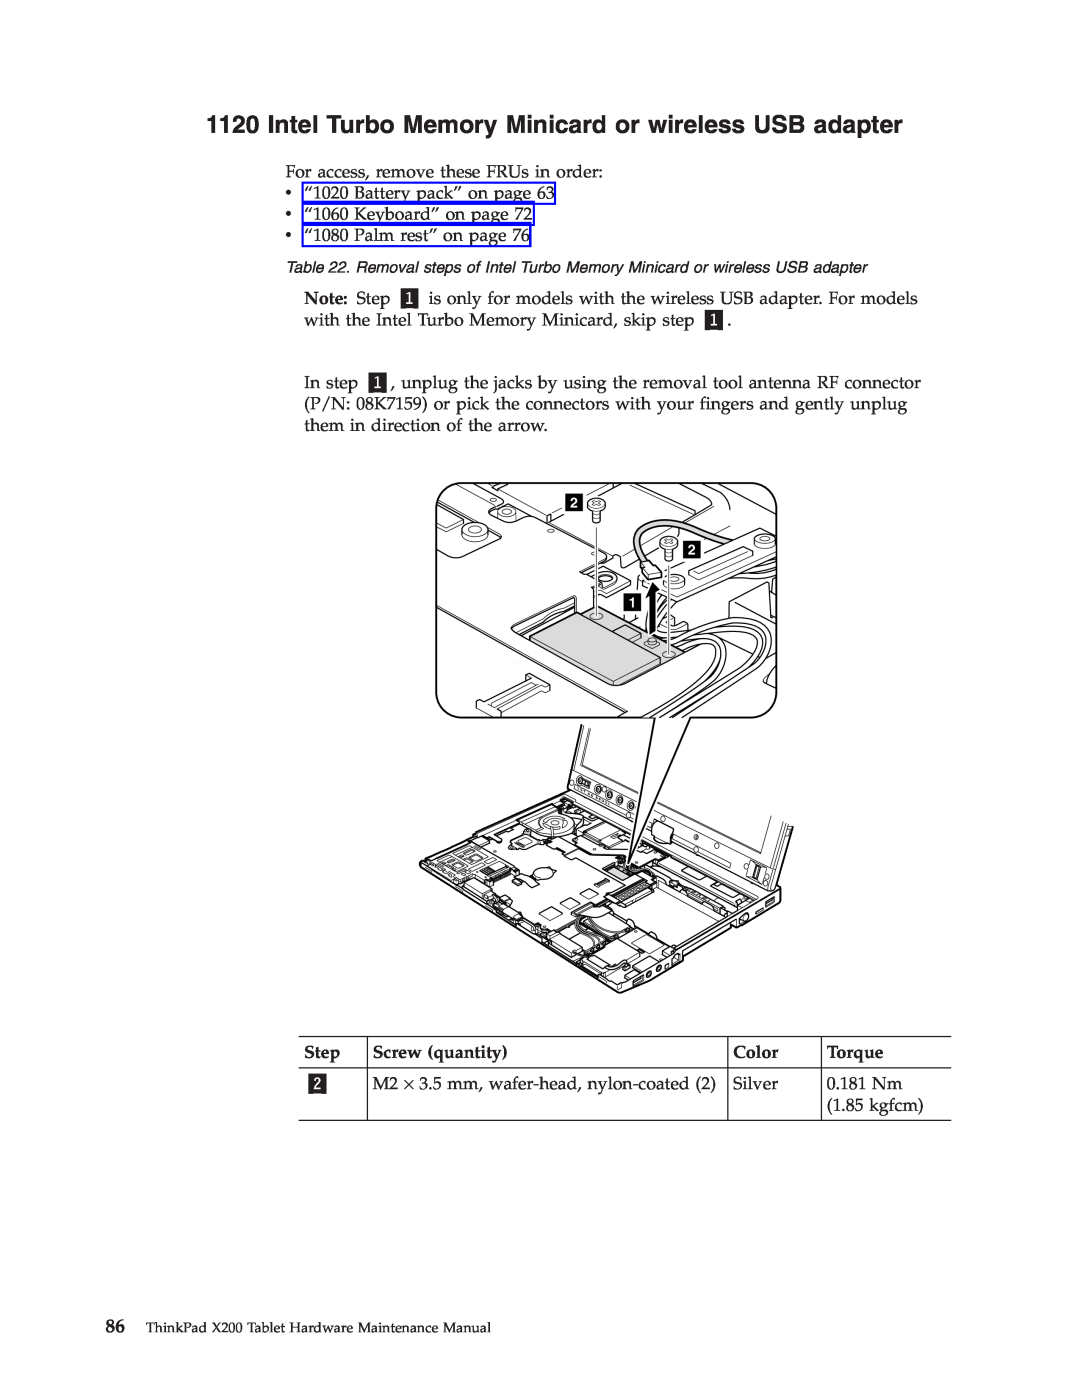 Lenovo X200 manual Note: Step, Screw quantity, Color, Torque 